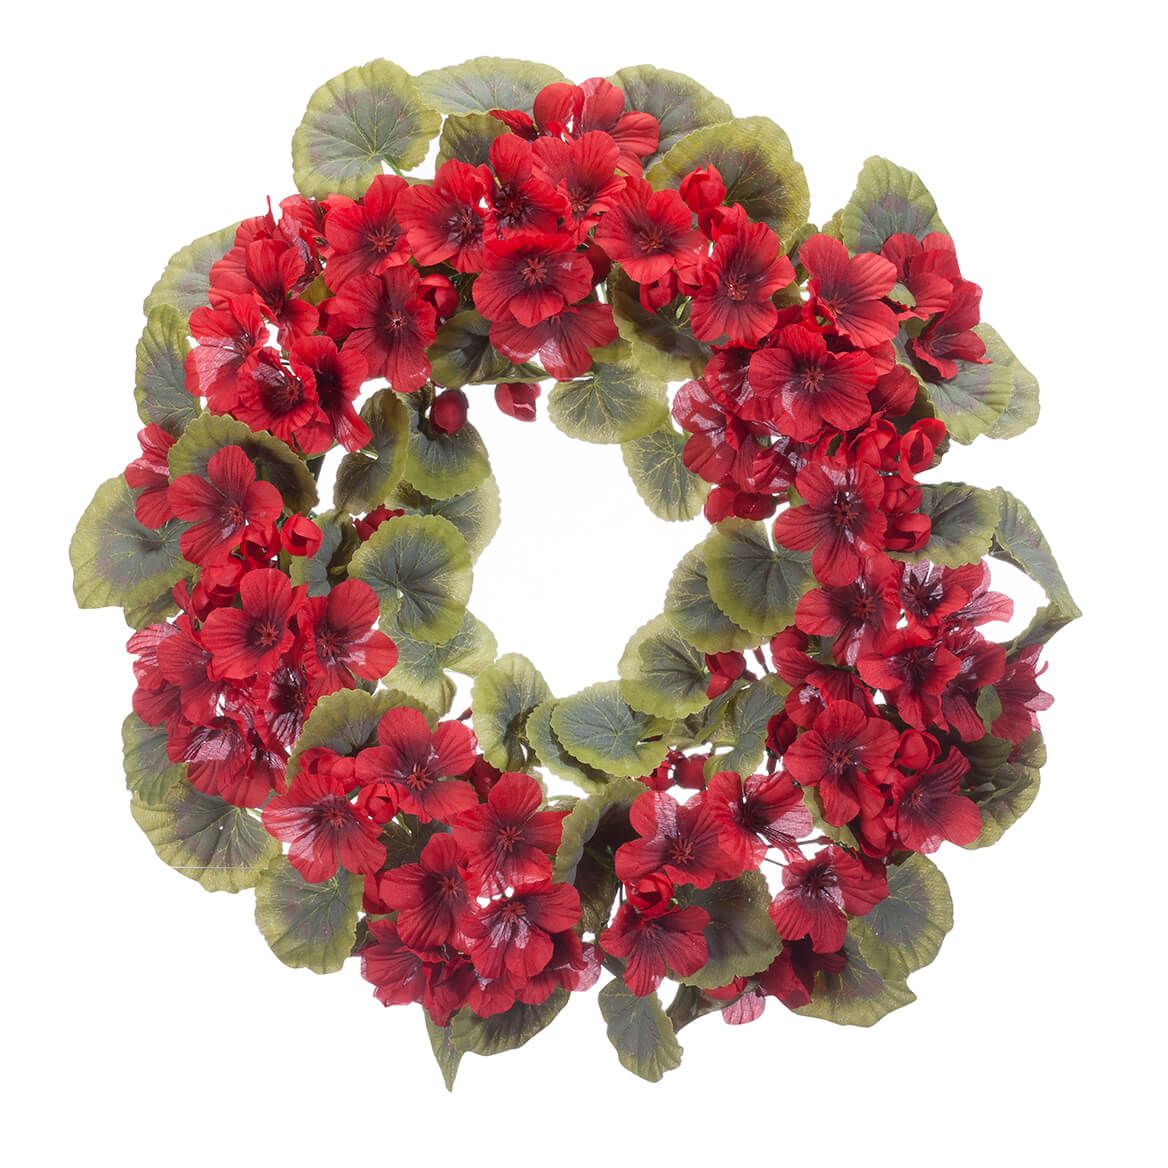 14" Geranium Wreath by OakRidge™ + '-' + 365030